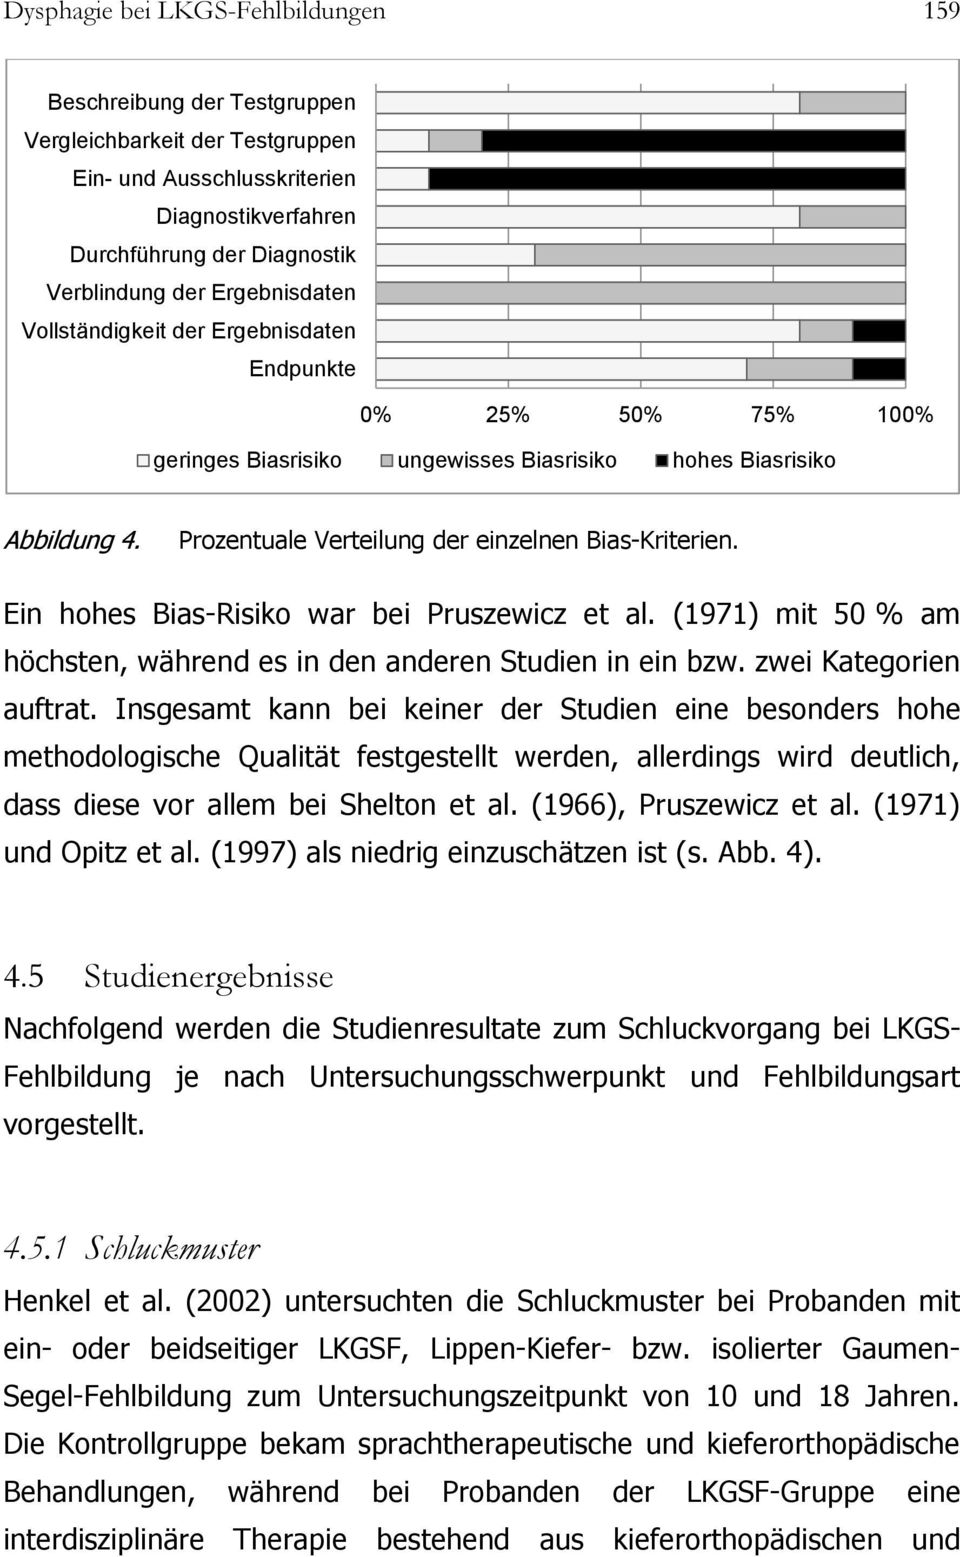 Prozentuale Verteilung der einzelnen Bias-Kriterien. Ein hohes Bias-Risiko war bei Pruszewicz et al. (1971) mit 50 % am höchsten, während es in den anderen Studien in ein bzw. zwei Kategorien auftrat.